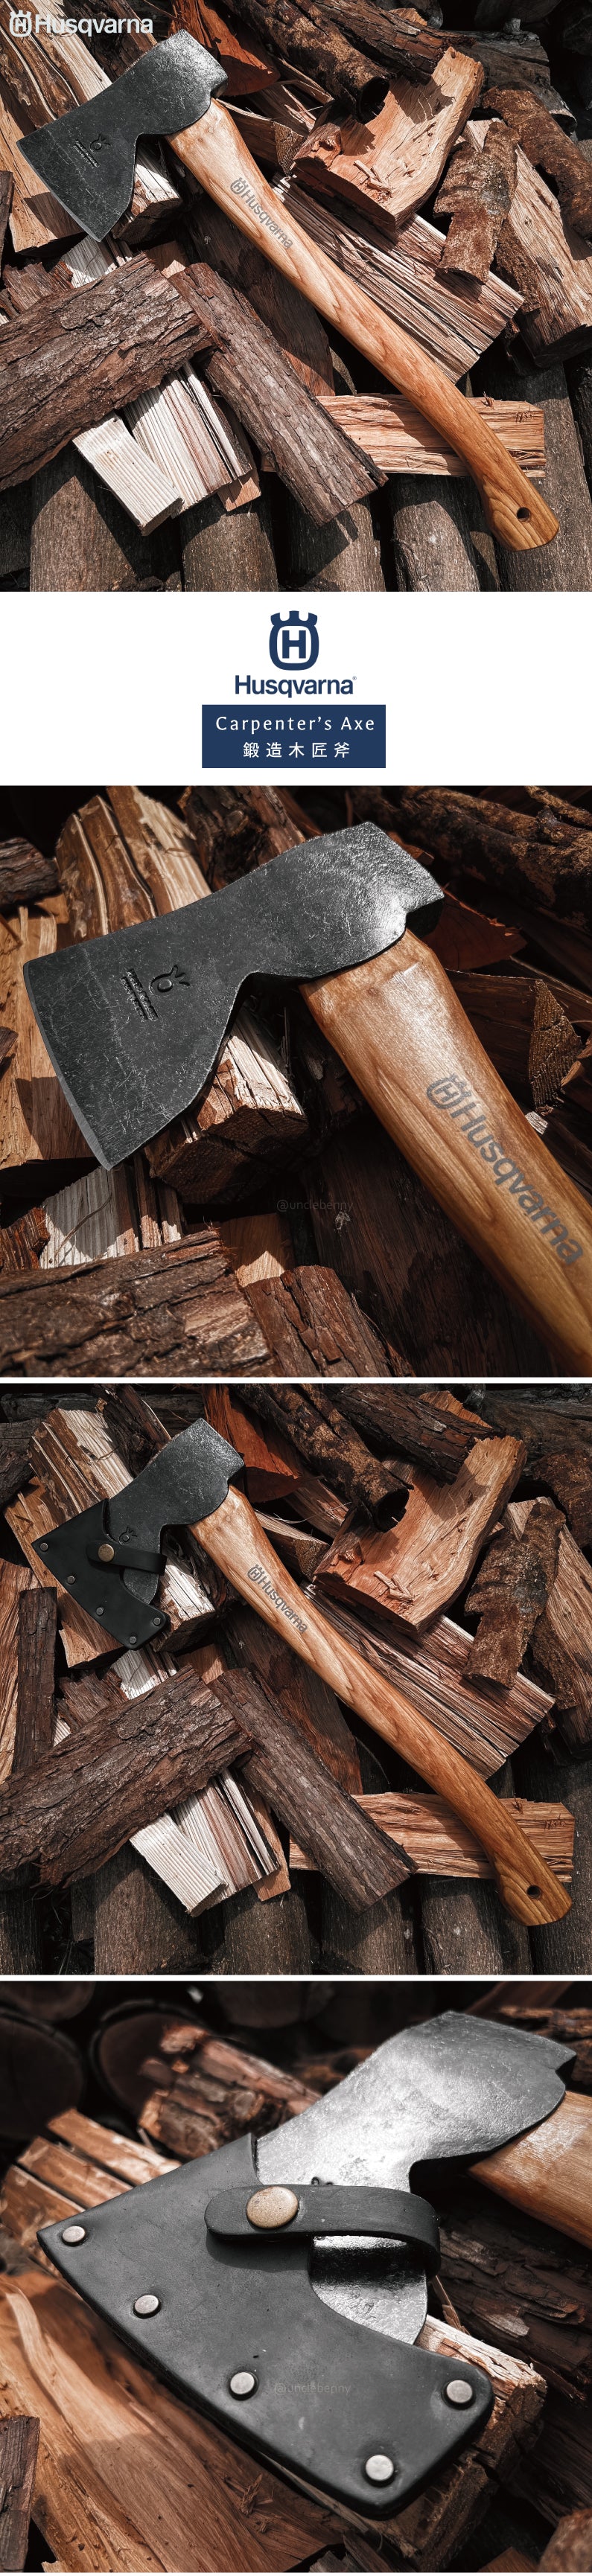 瑞典Husqvarna •  手工鍛造Carpenter’s Axe 木匠斧